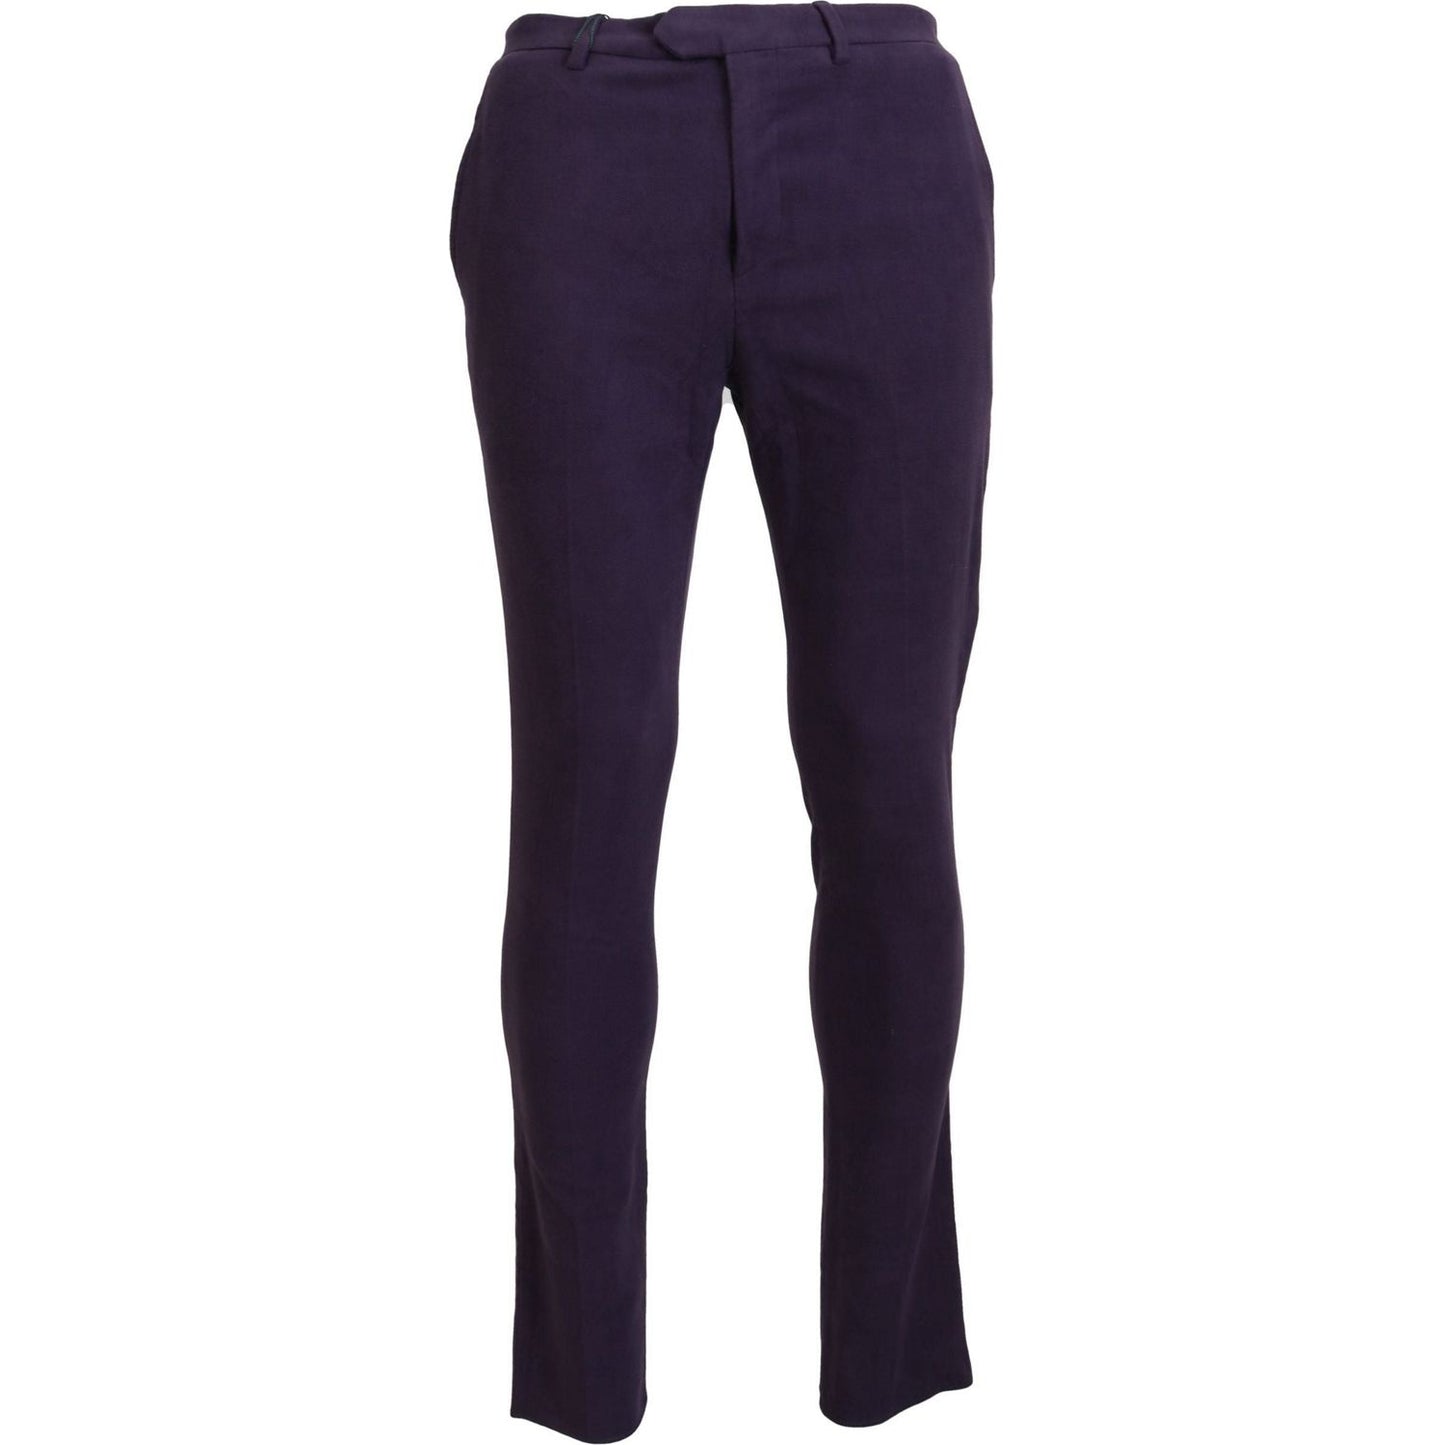 BENCIVENGA Elegant Purple Cotton Trousers purple-pure-cotton-tapered-mens-pants IMG_5474-scaled-fbf9b273-e48.jpg